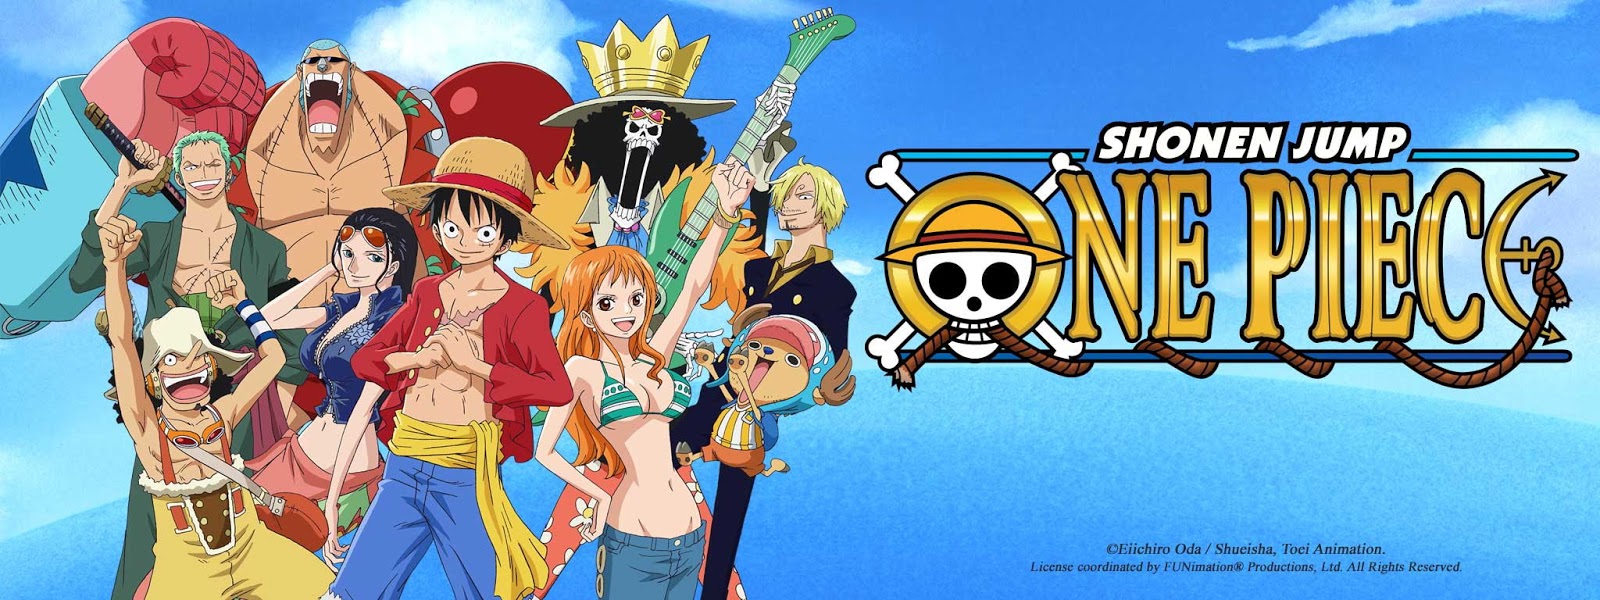 أنمي ون بيس حلقة 793 مترجم الى العربية Anime One Piece Episode 793 Arabic